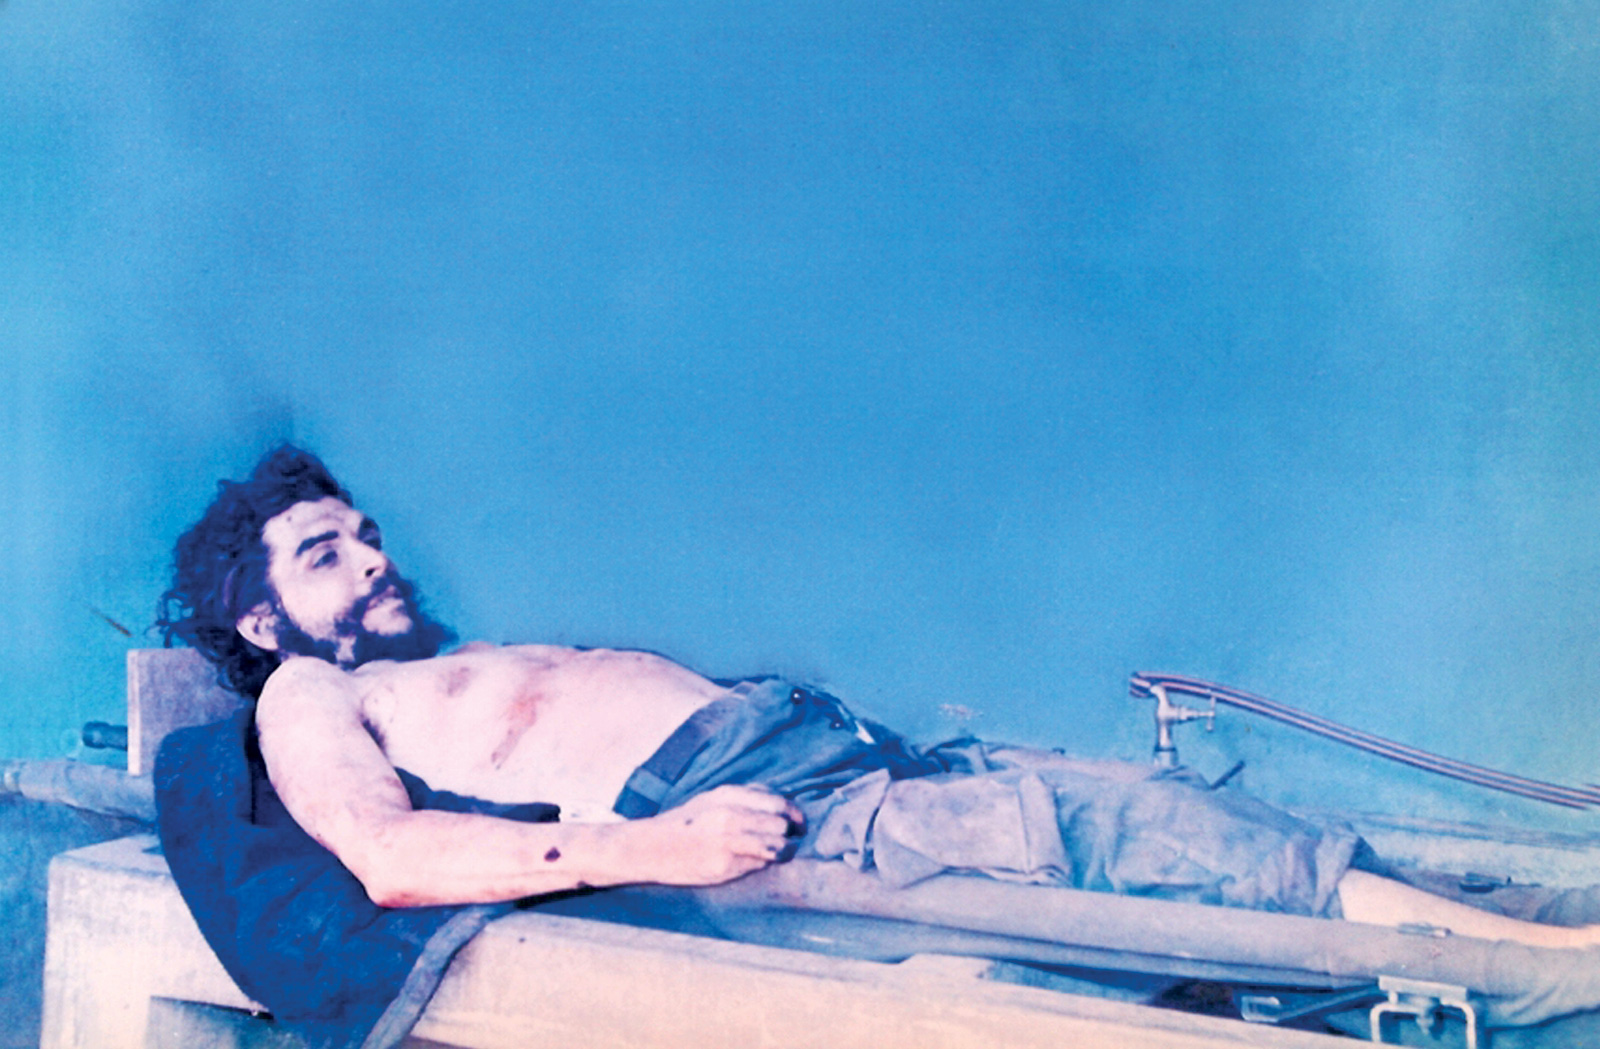 Cadáver del Ché Guevara en Vallegrande, Bolivia. Fotografía tomada por un agente de la CIA